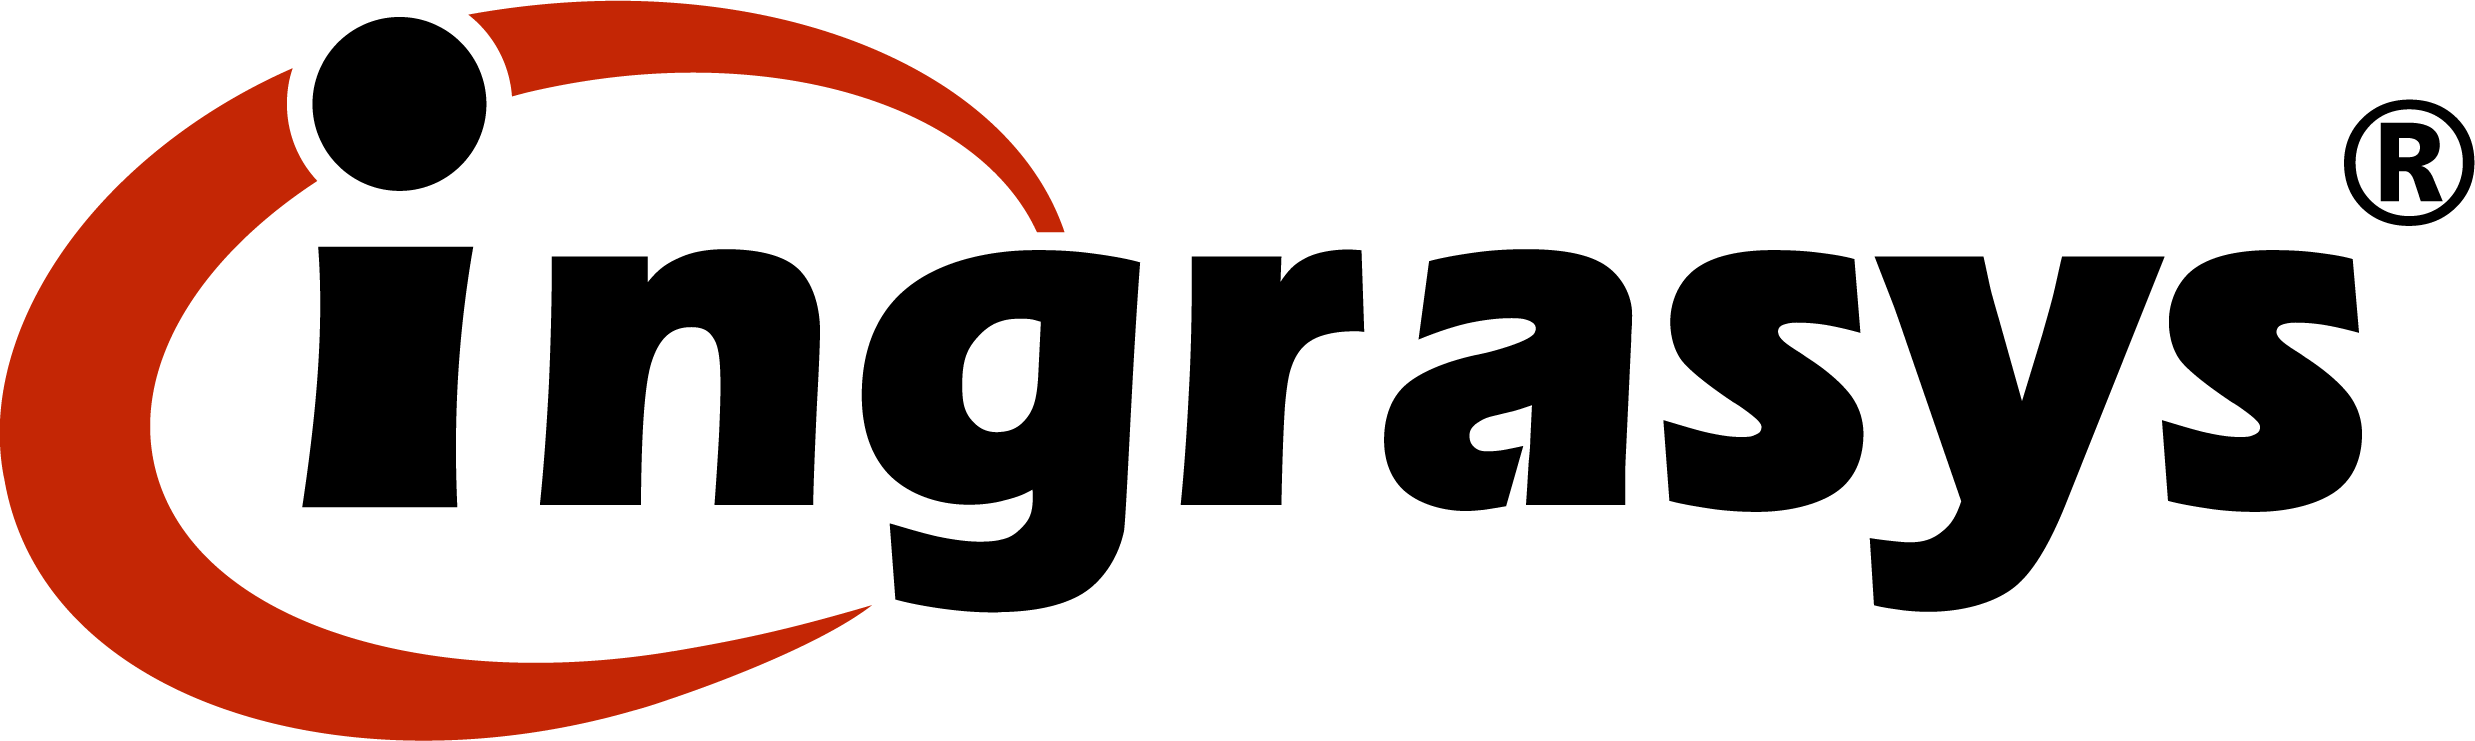 Ingrasys logo